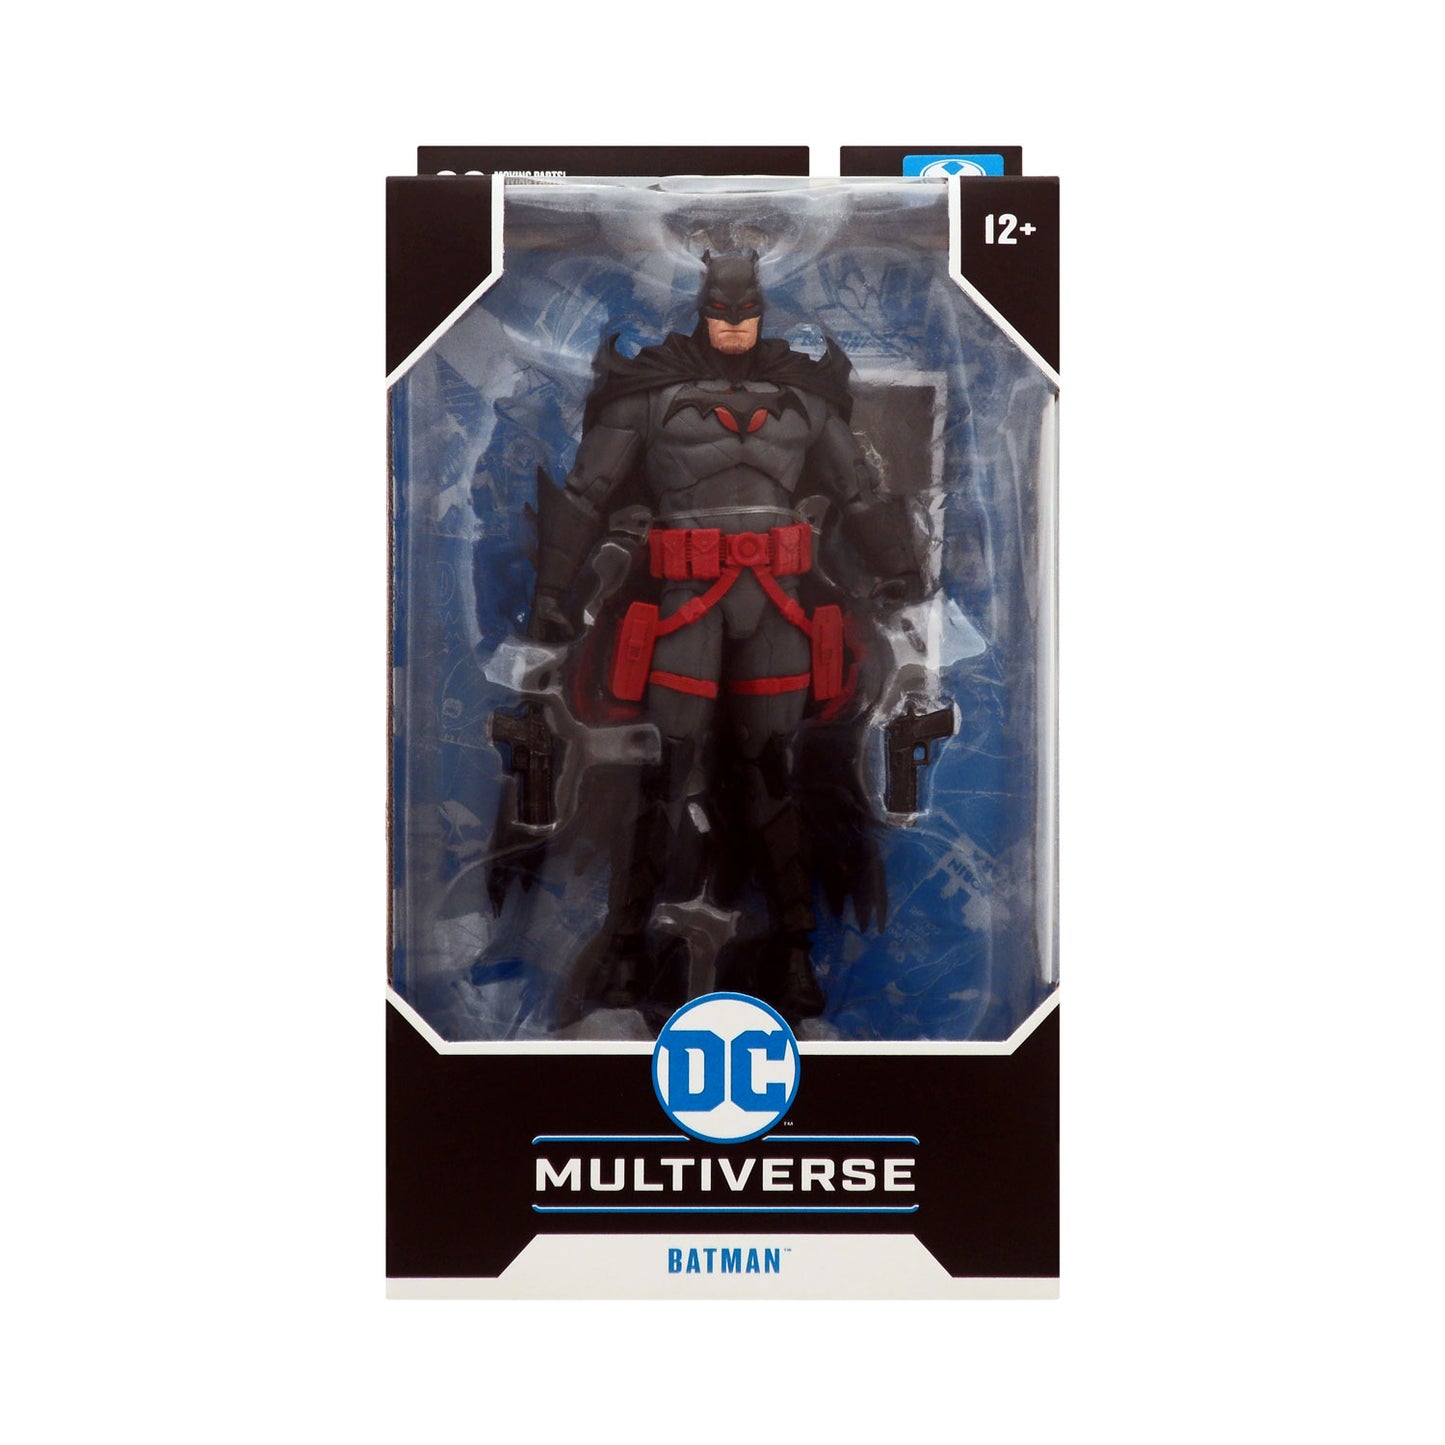 DC Multiverse Batman Flashpoint Exclusive